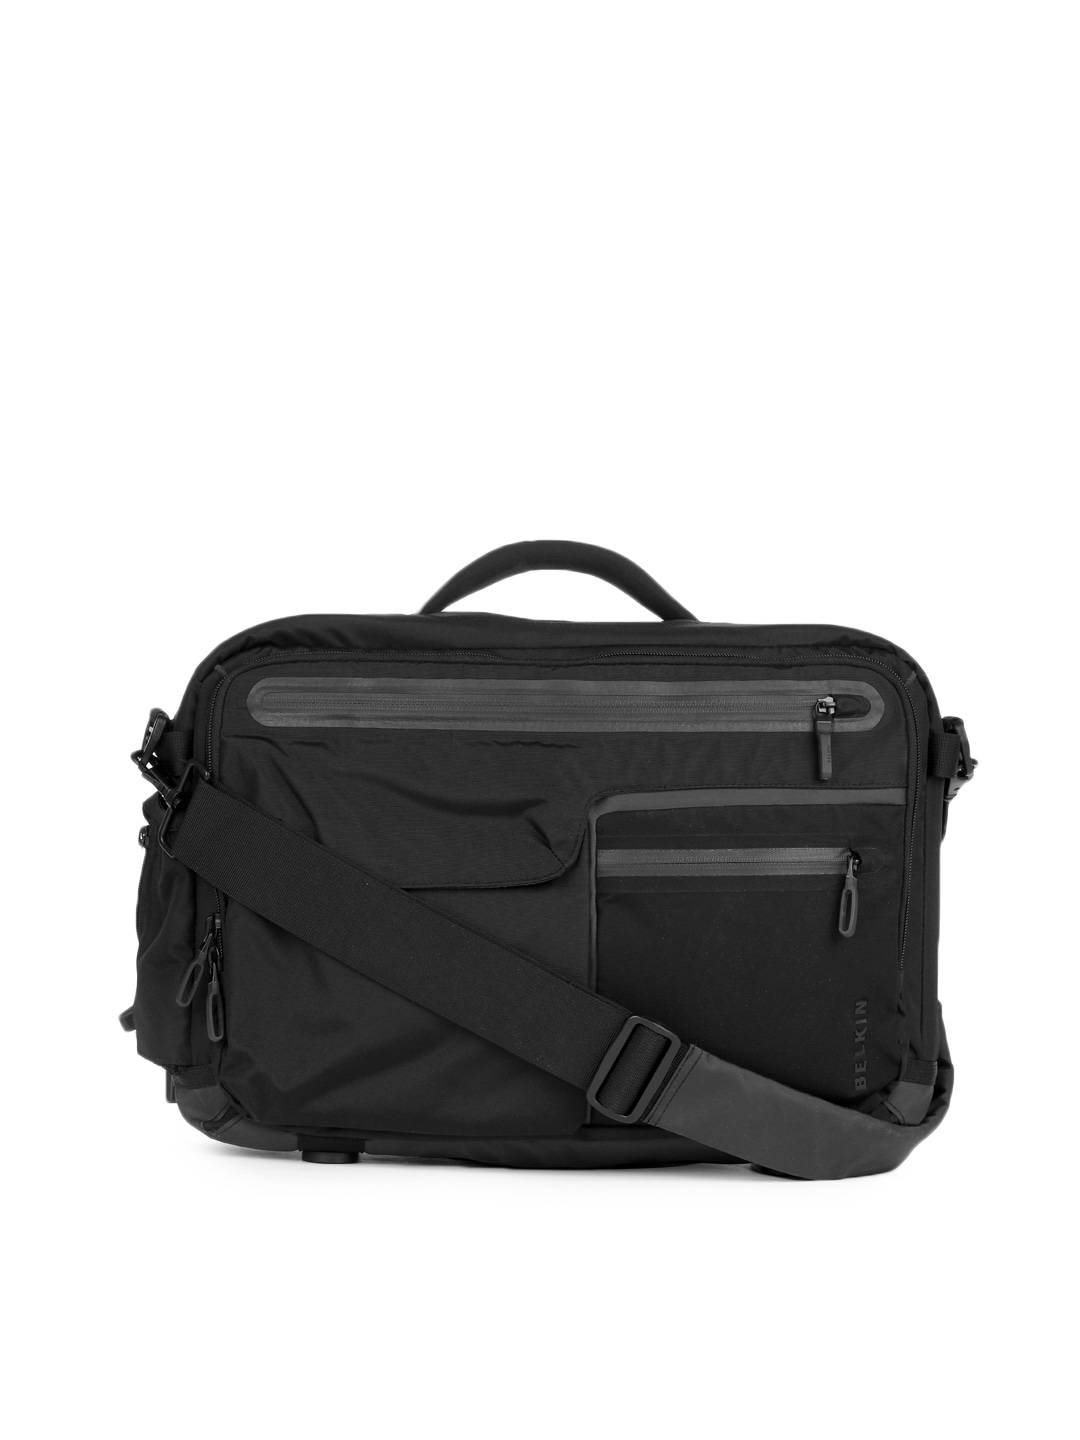 Belkin Unisex Black Dash Laptop 16 Toploader Handbag